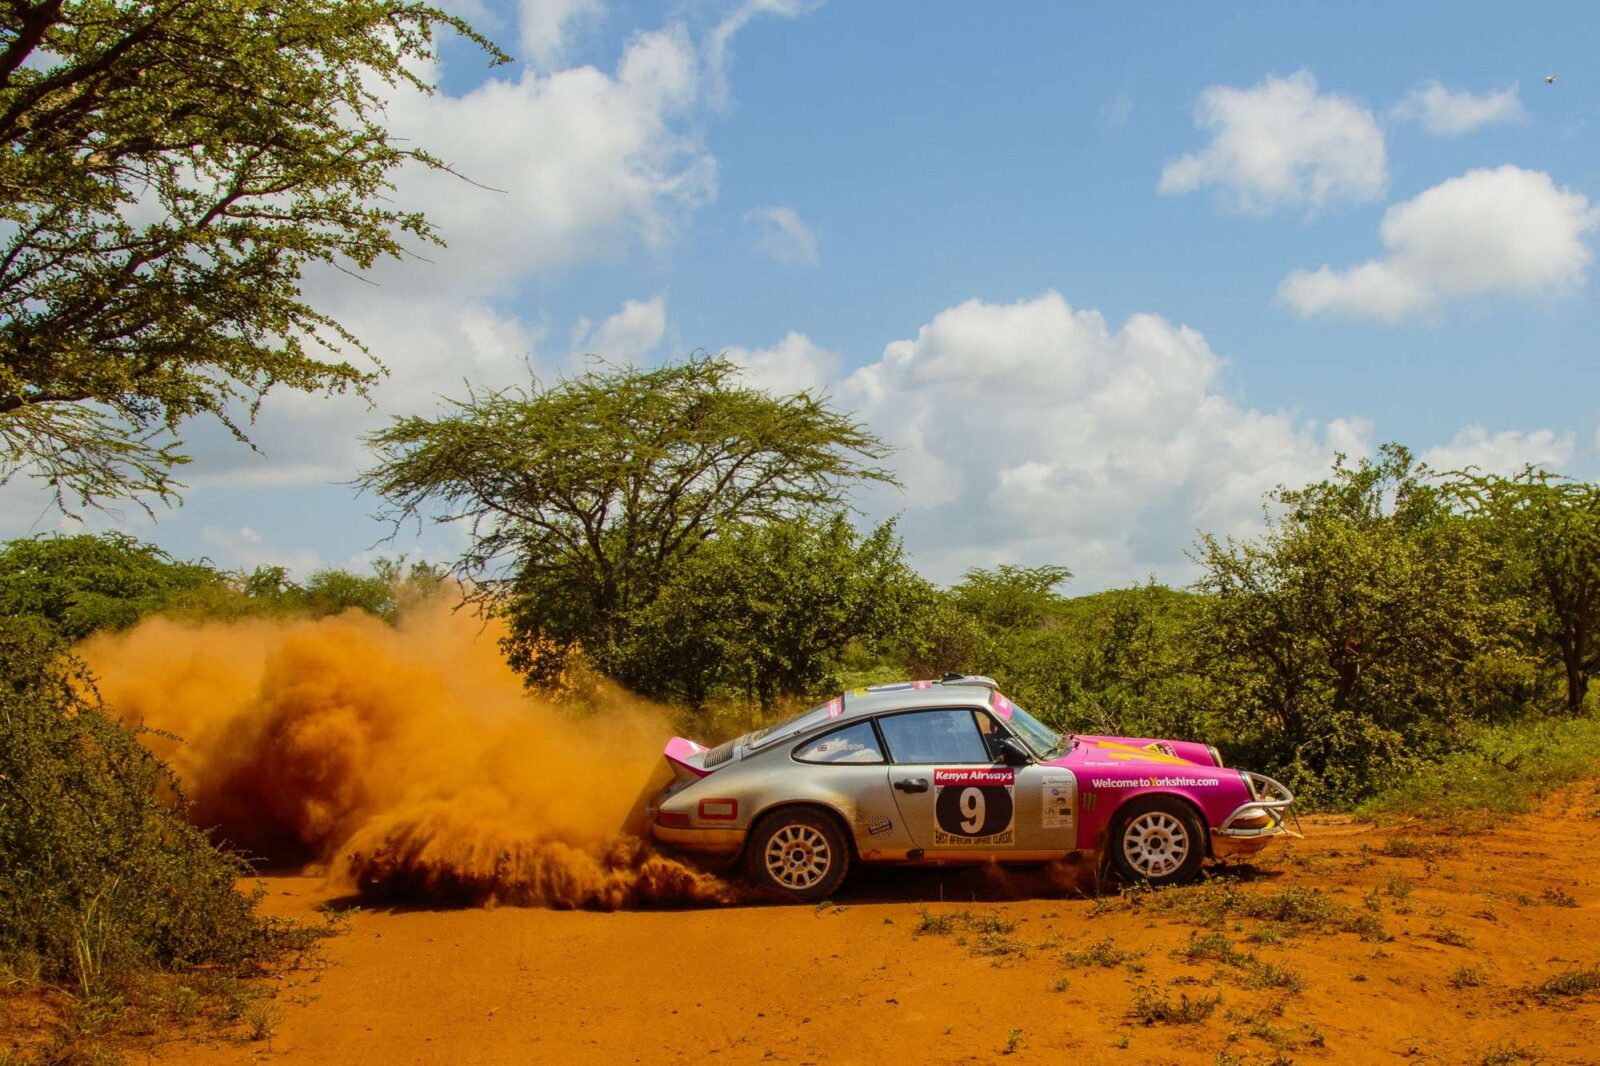 safari rally cars for sale